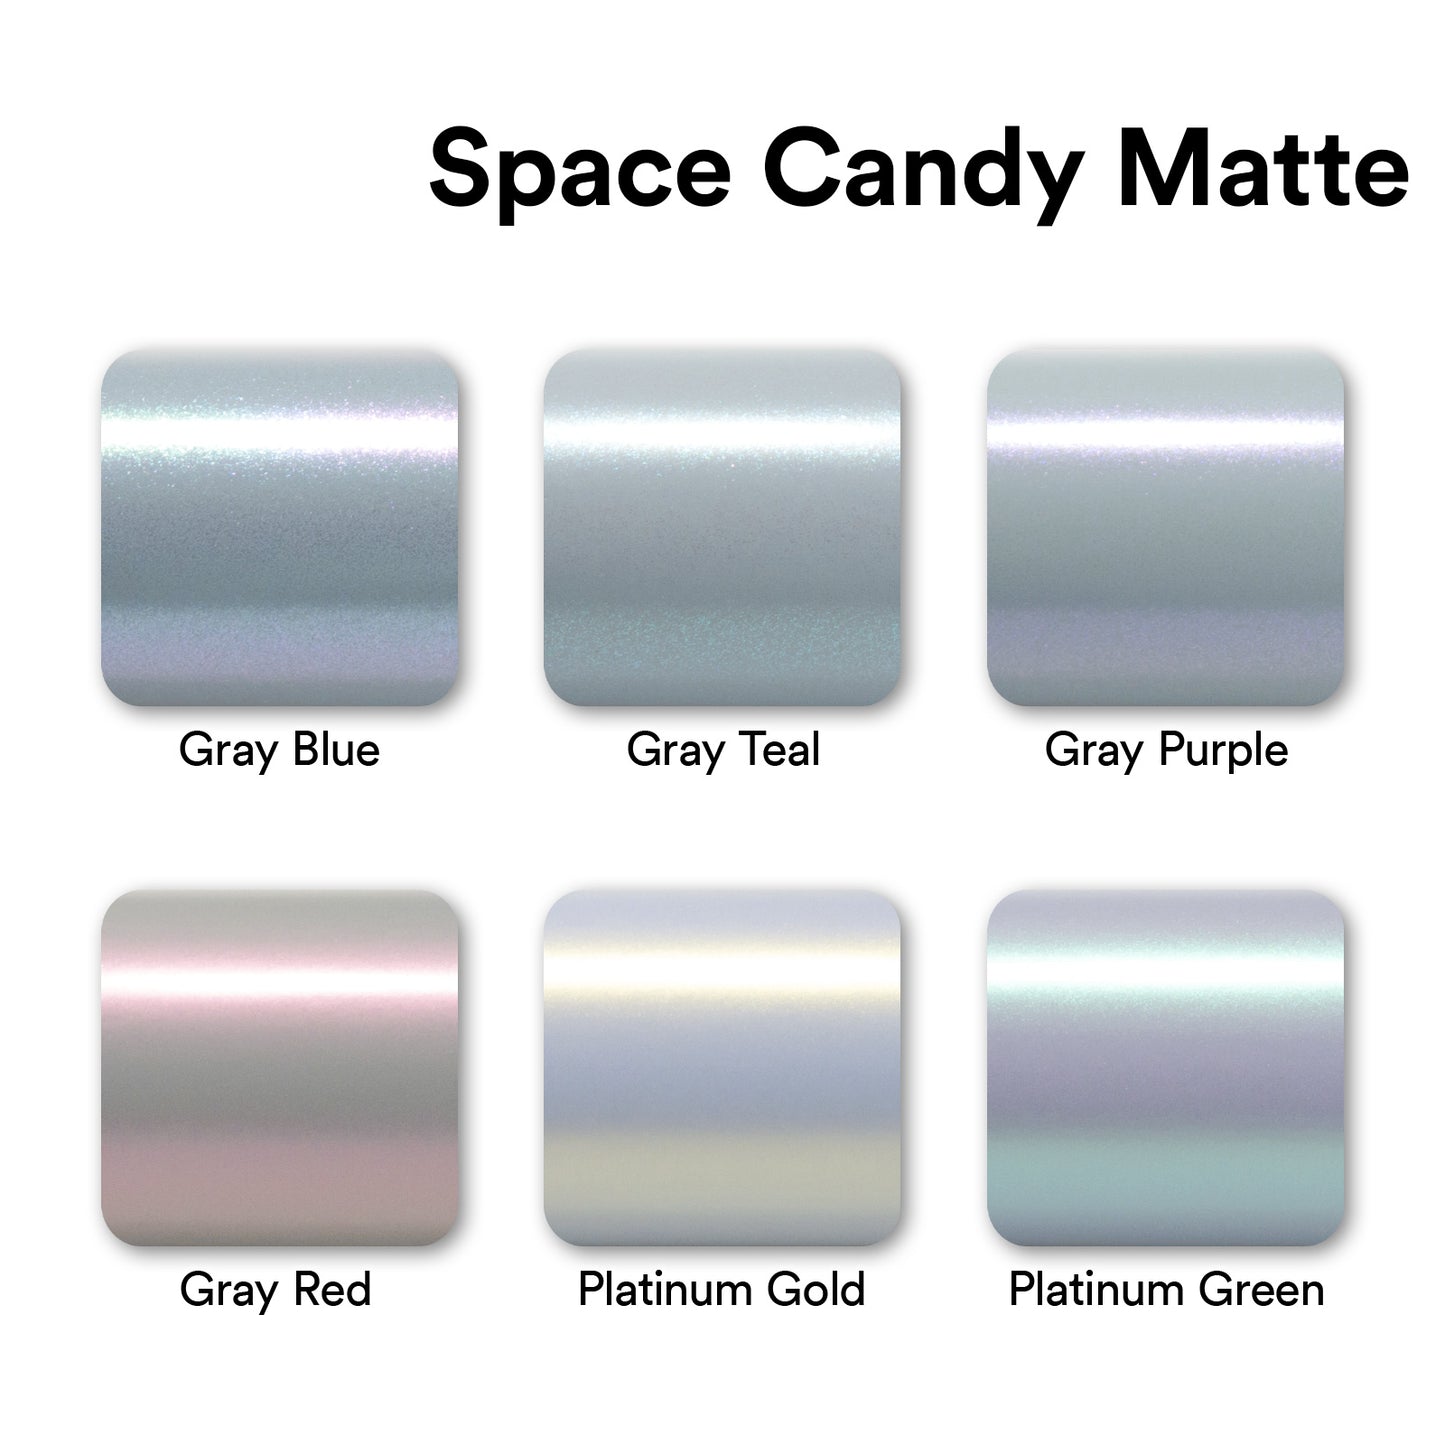 Space Candy Matte Platinum Gold Vinyl Wrap